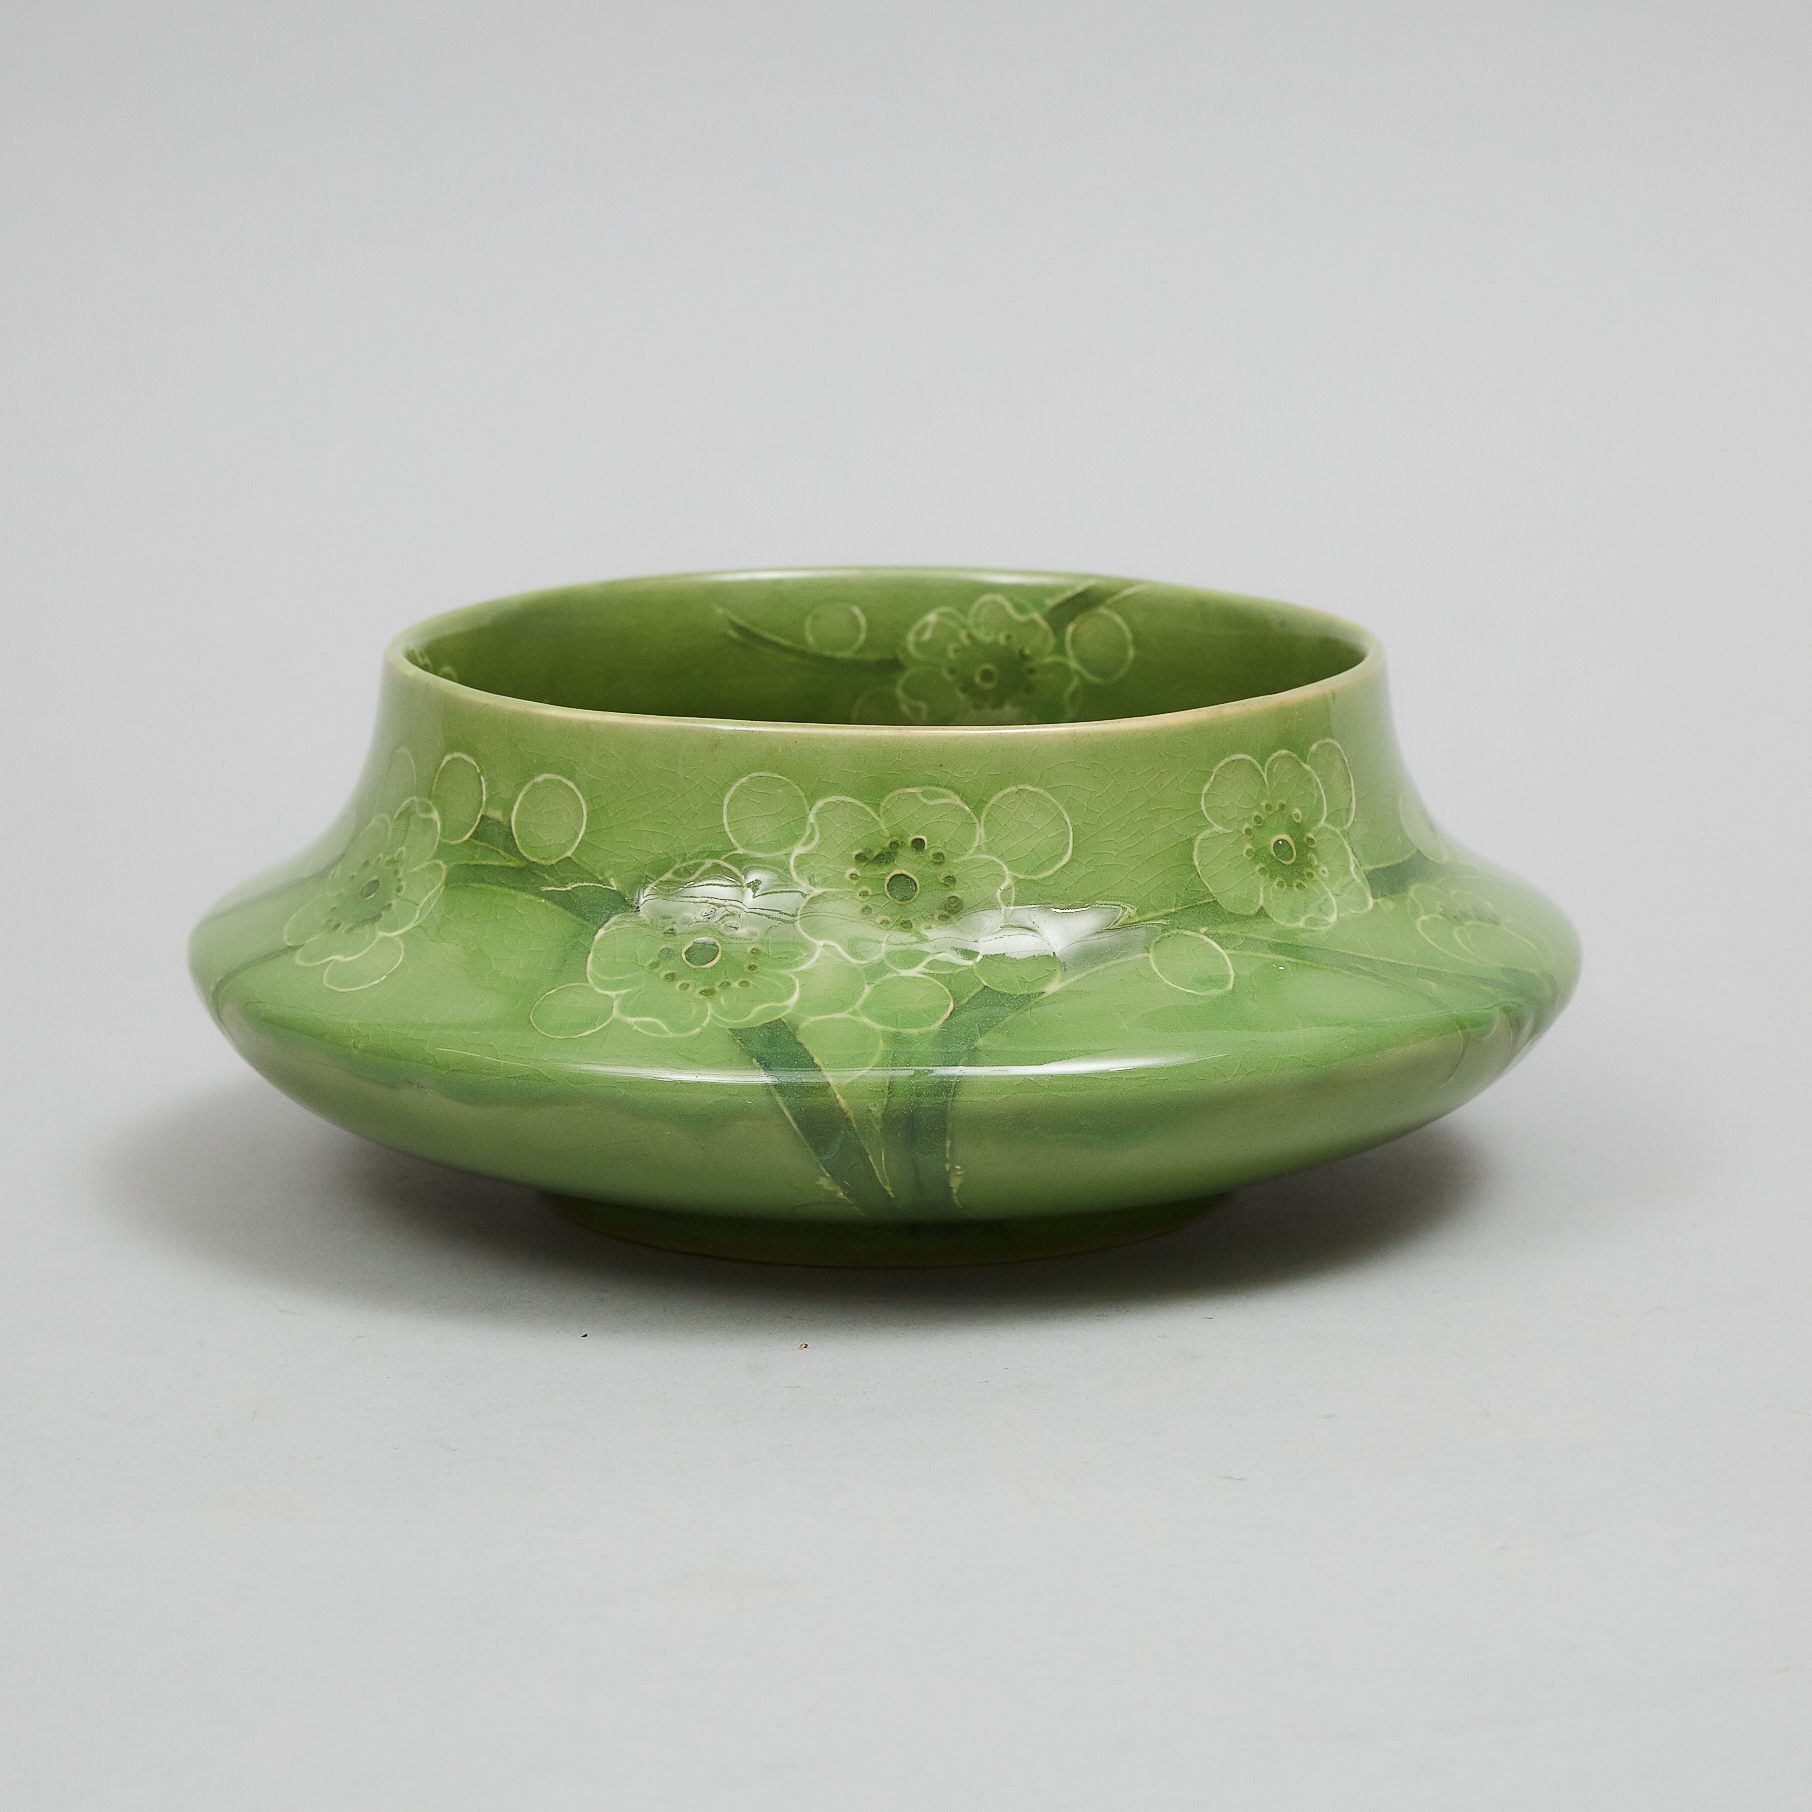 Macintyre Moorcroft Green Glazed Prunus Bowl, dated 1912